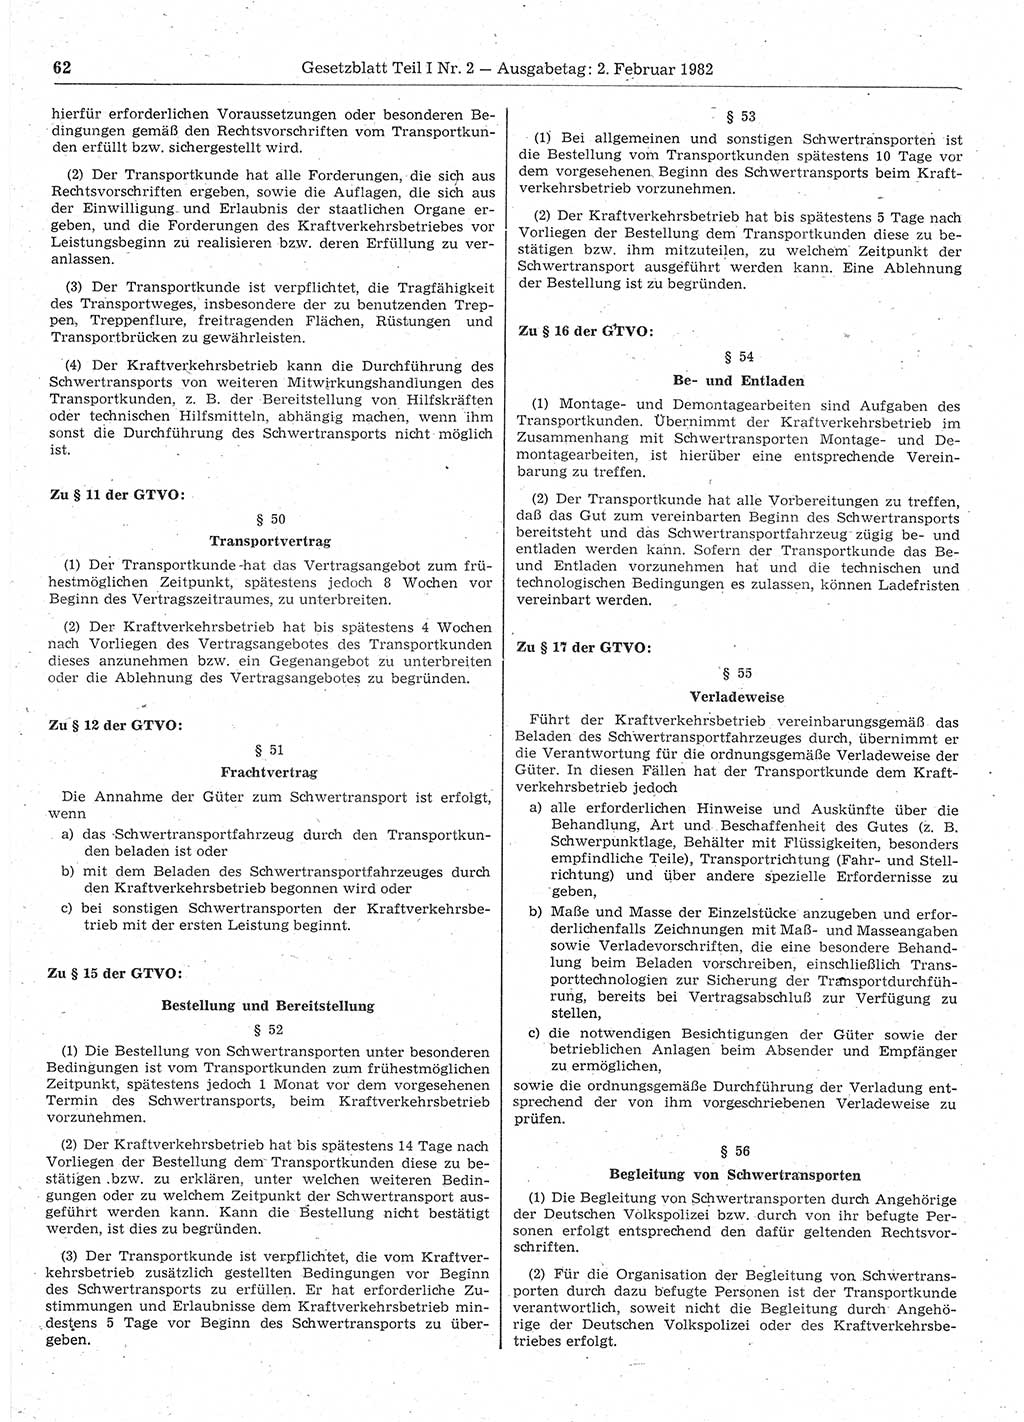 Gesetzblatt (GBl.) der Deutschen Demokratischen Republik (DDR) Teil Ⅰ 1982, Seite 62 (GBl. DDR Ⅰ 1982, S. 62)